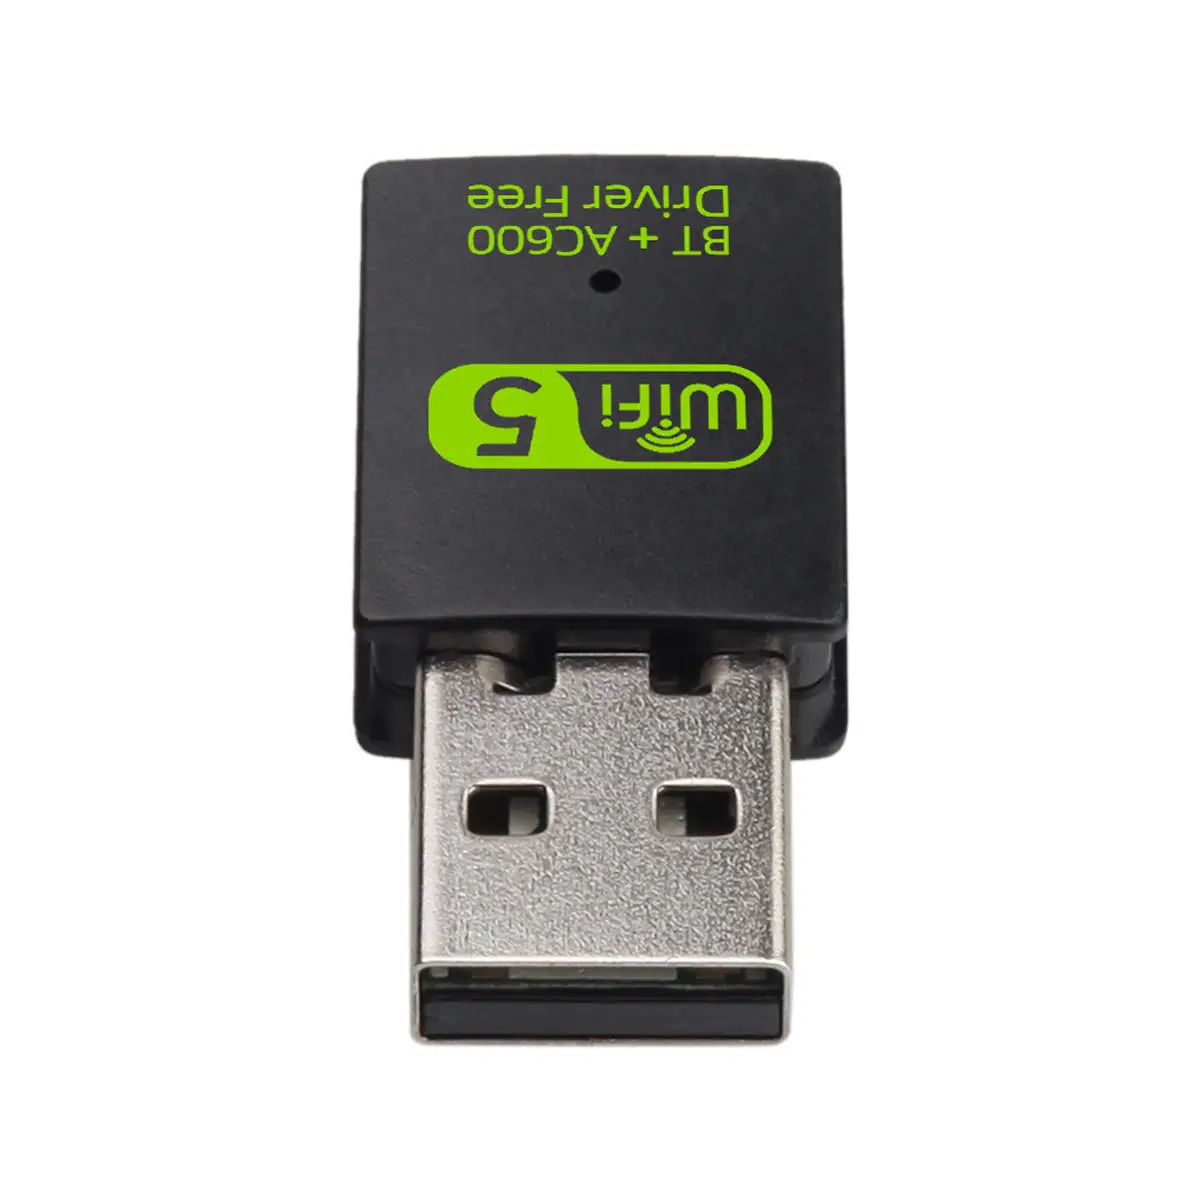 Schlussverkauf 600 Mbps USB 2.0 WLAN-Adapter Dualband 2.4/5 GHz WLAN-Adapter drahtloser USB BlueTooth Adapter